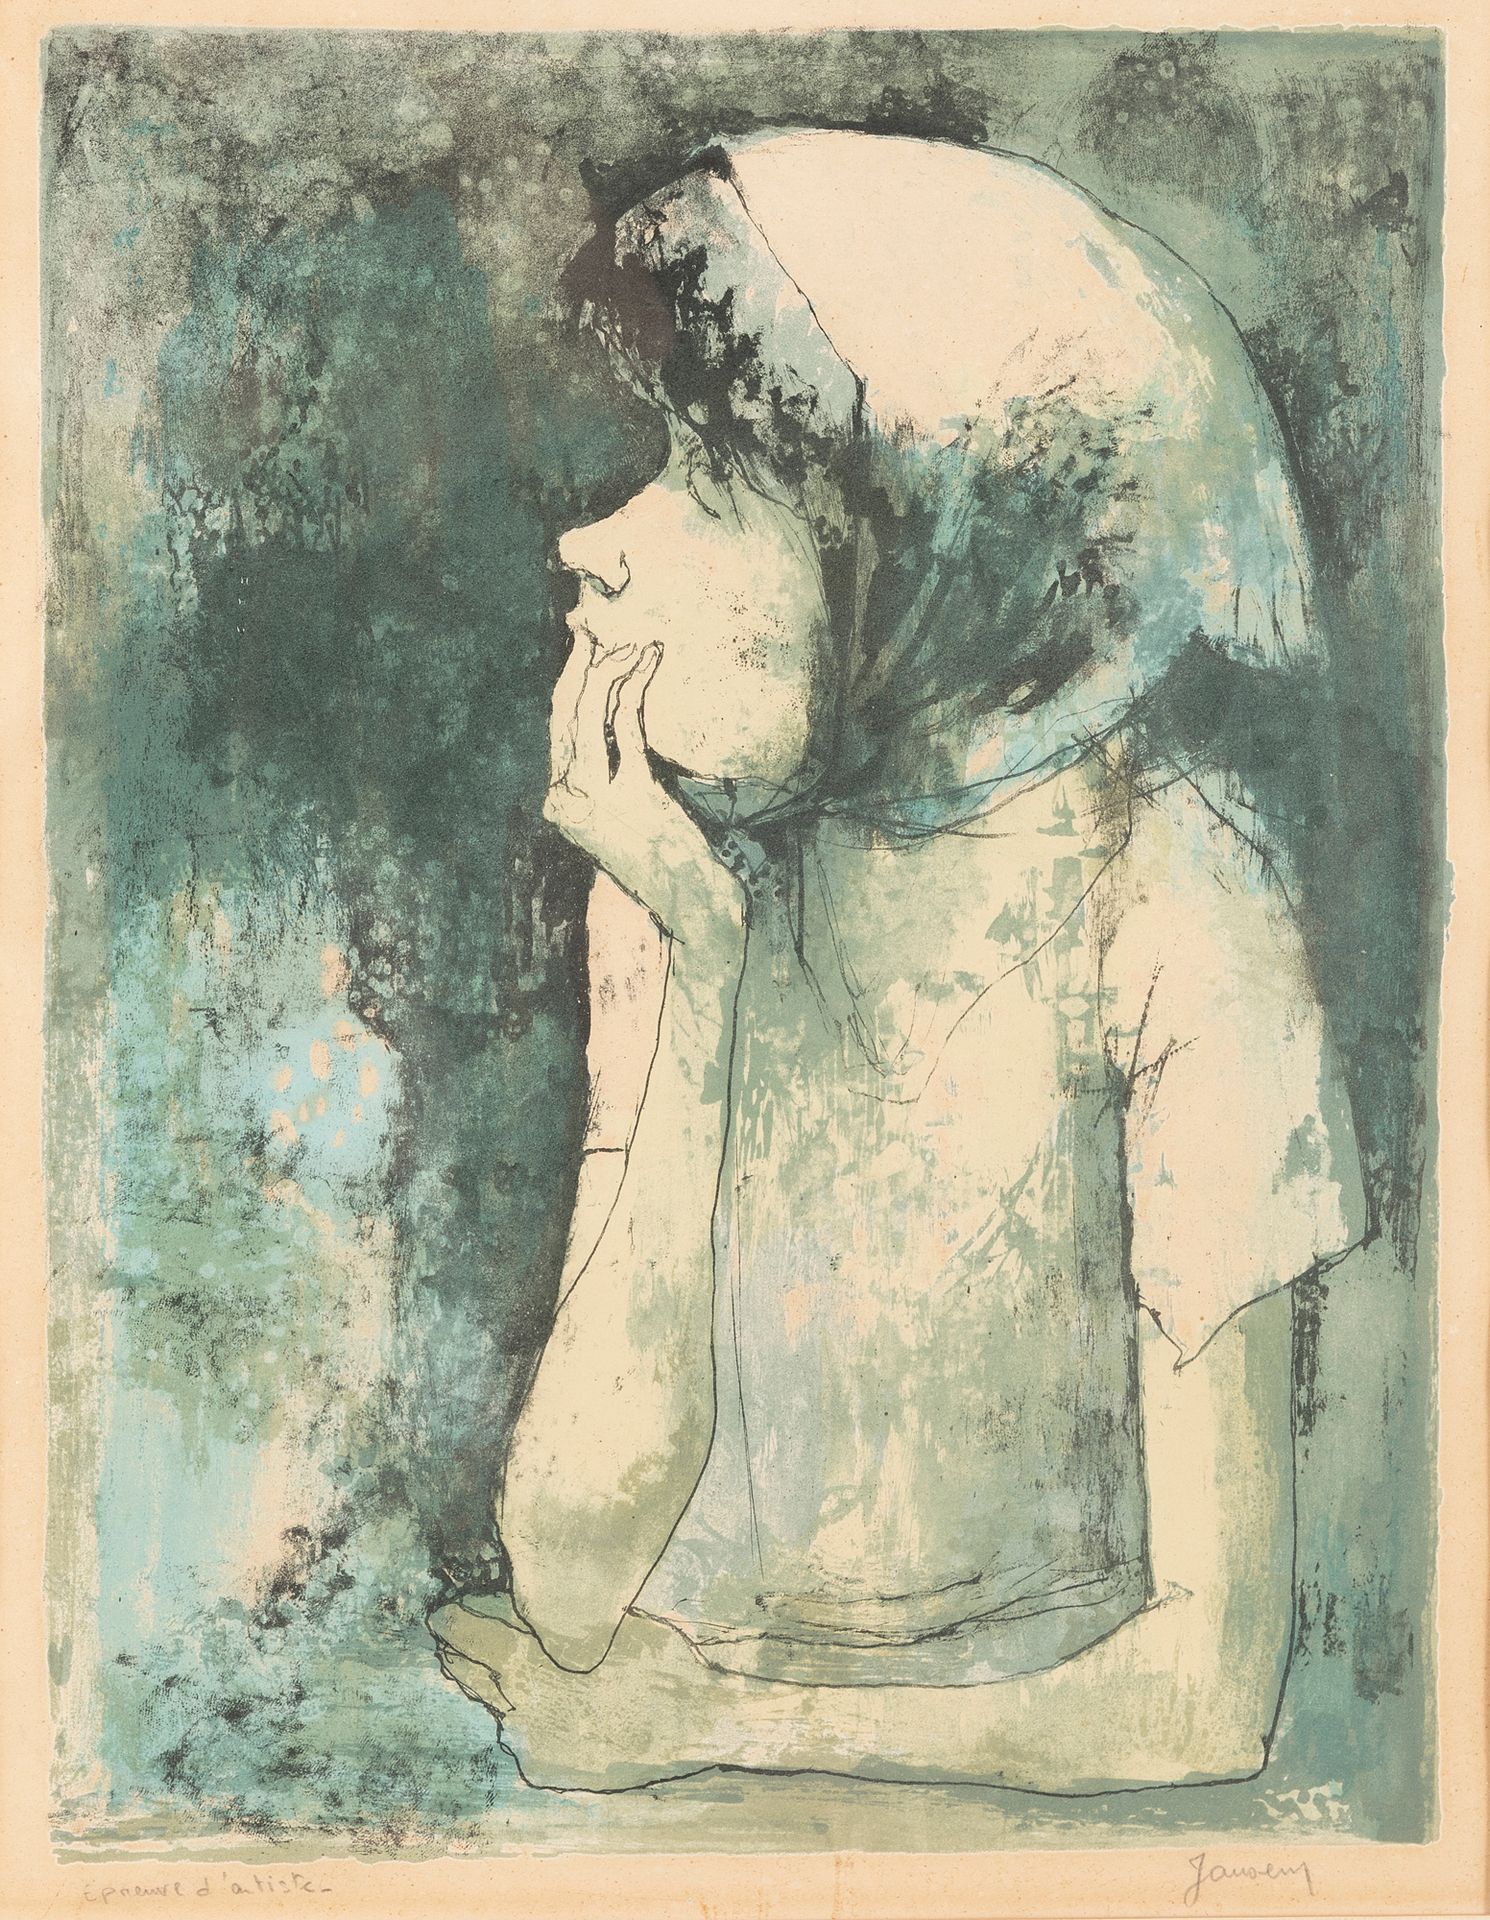 Null 让-詹森 (1920-2013)

形象

右下角有签名的彩色石版画

艺术家的证明

47 x 36,5 cm 正在观看